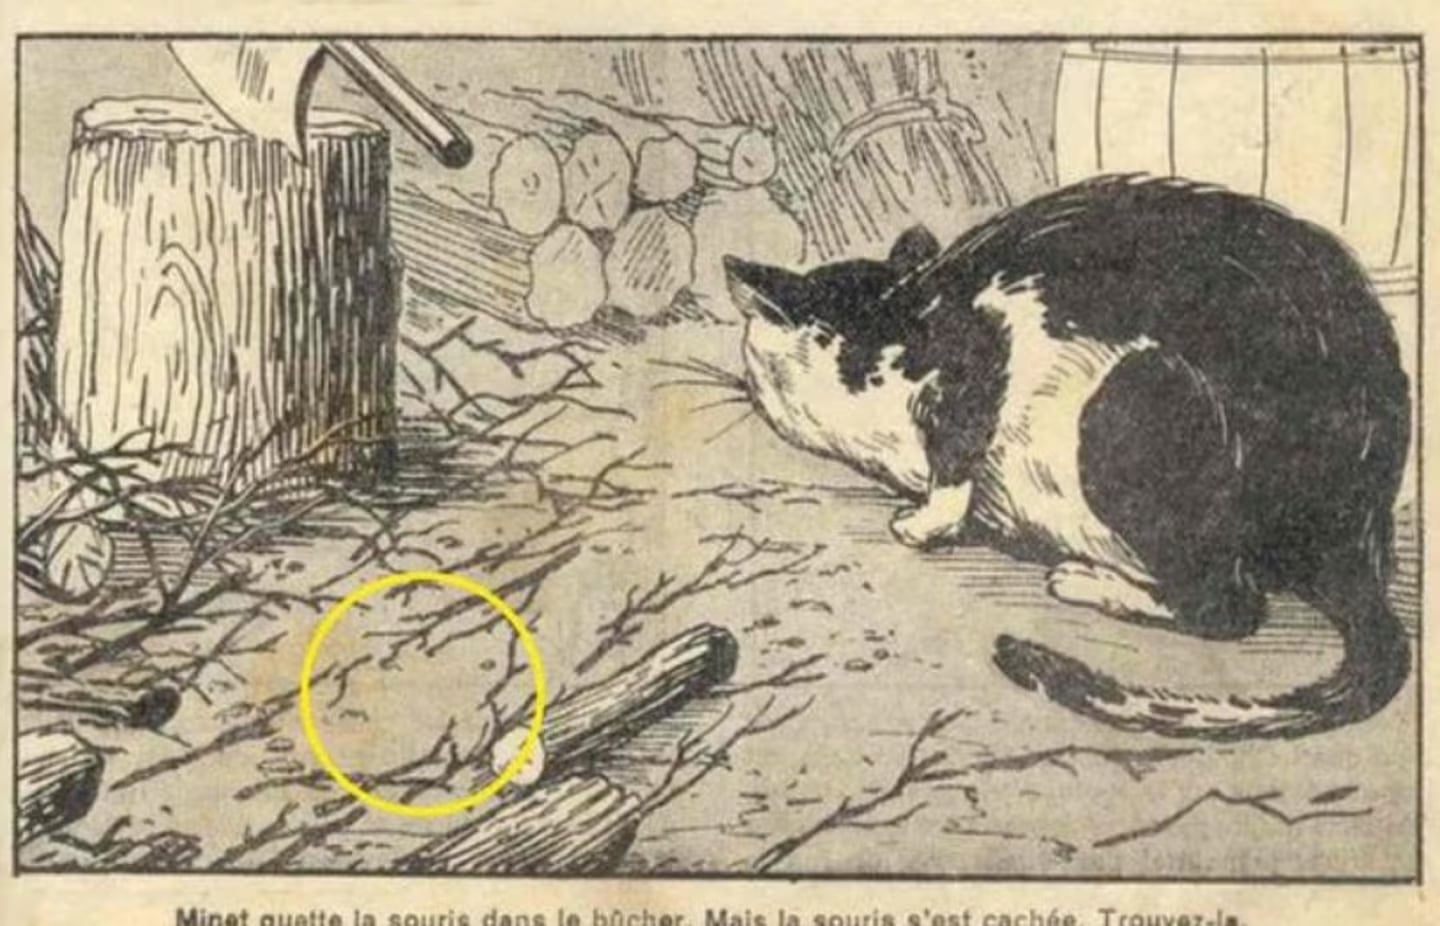 contioutra.com - Desafio de ilusão de ótica: Você consegue localizar o gato escondido em 7 segundos?